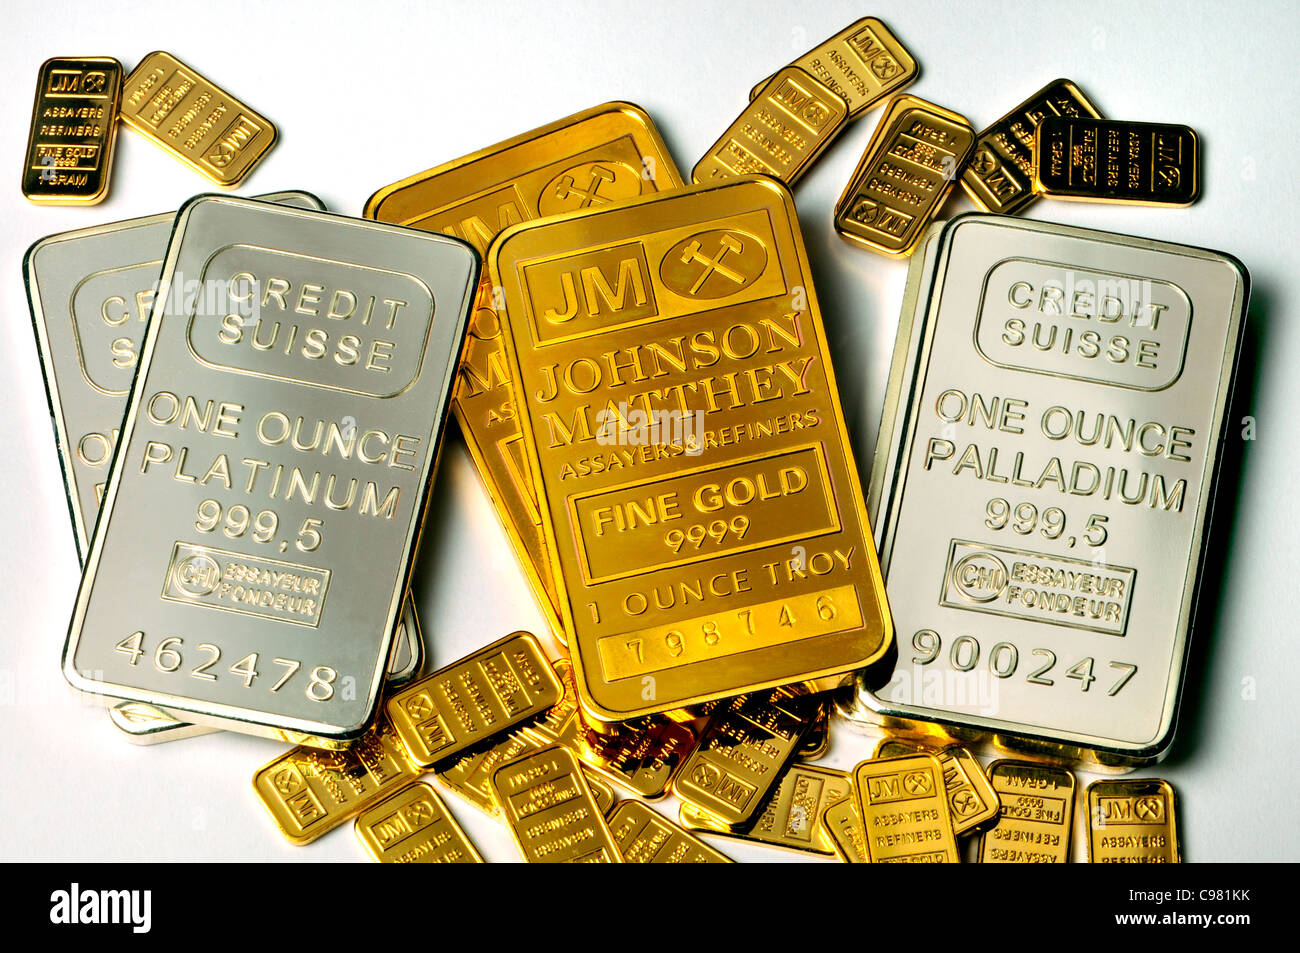 Gold, Platin und Palladium Barren in 1 Unze und 1g Balken / Barren  (vergoldete Repliken Stockfotografie - Alamy